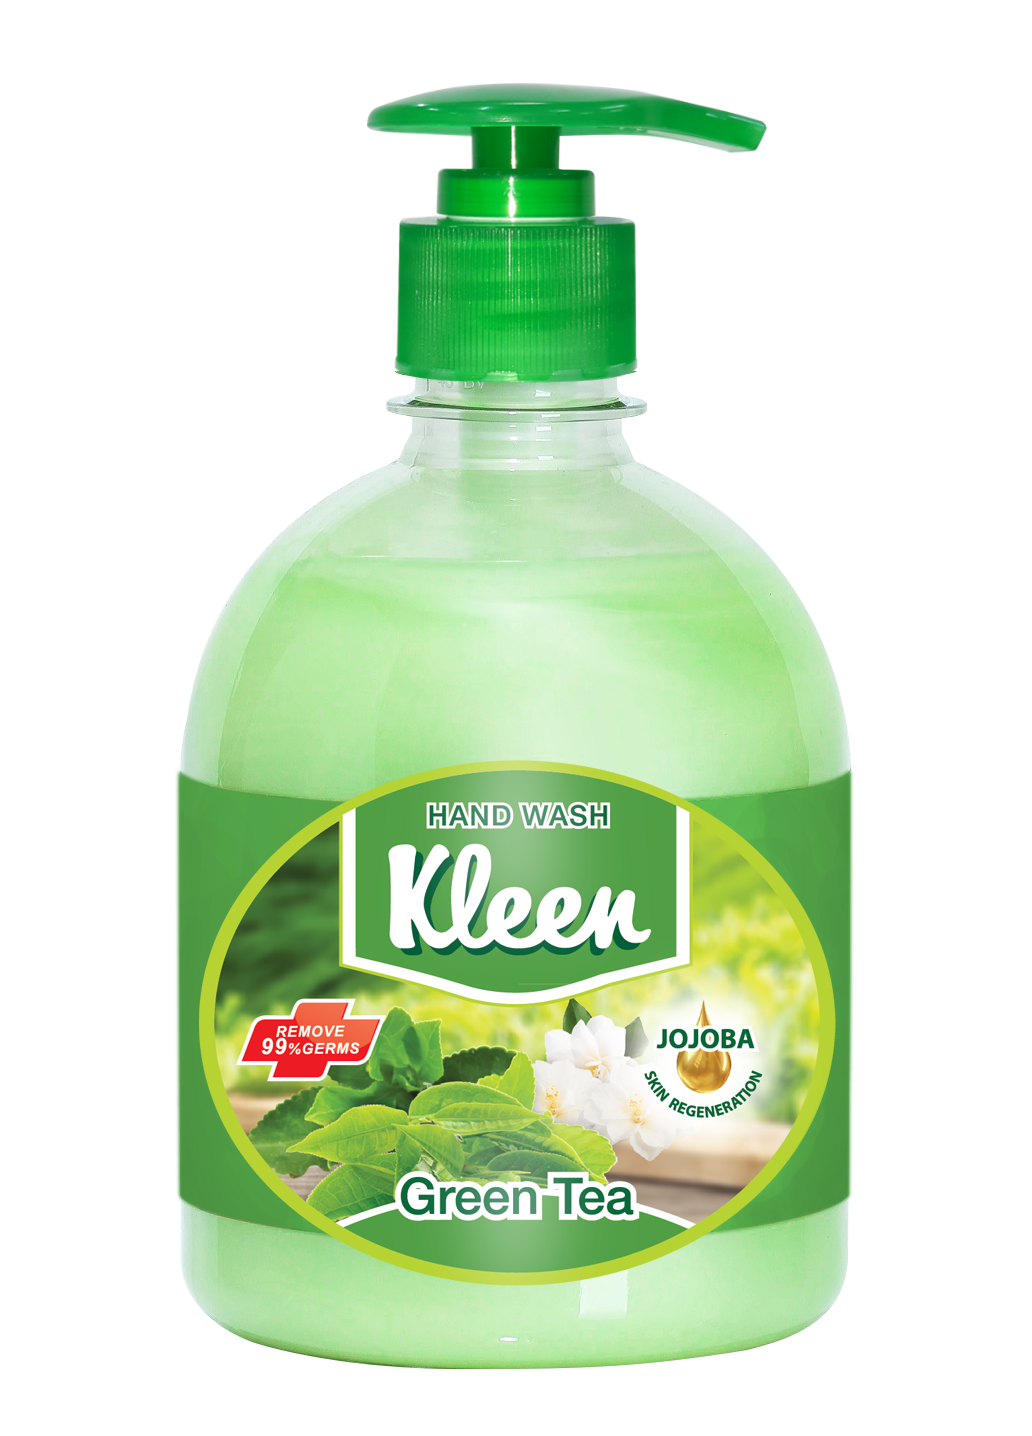 Hand Wash Kleen Green tea